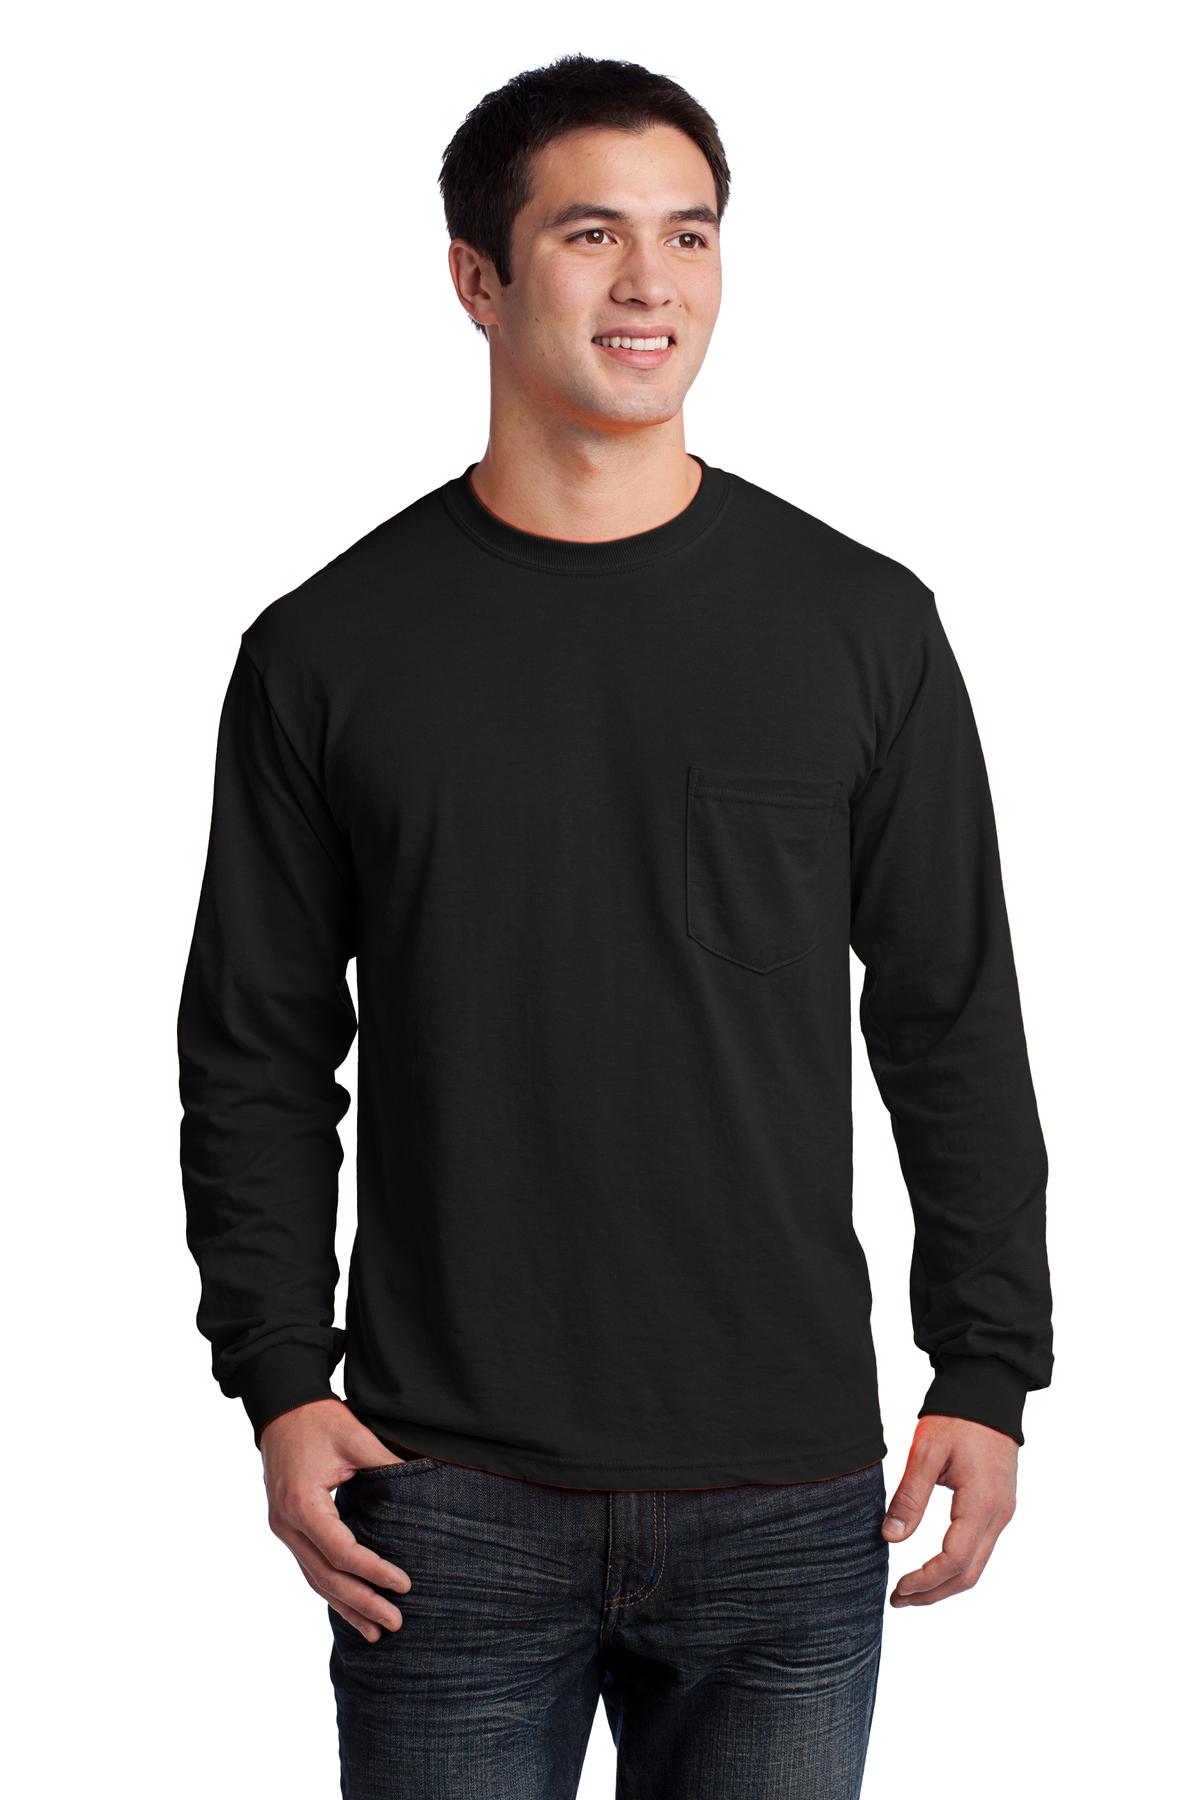 G241 – Gildan Pocket Ultra Cotton 100 Cotton Long Sleeve T-Shirt ...